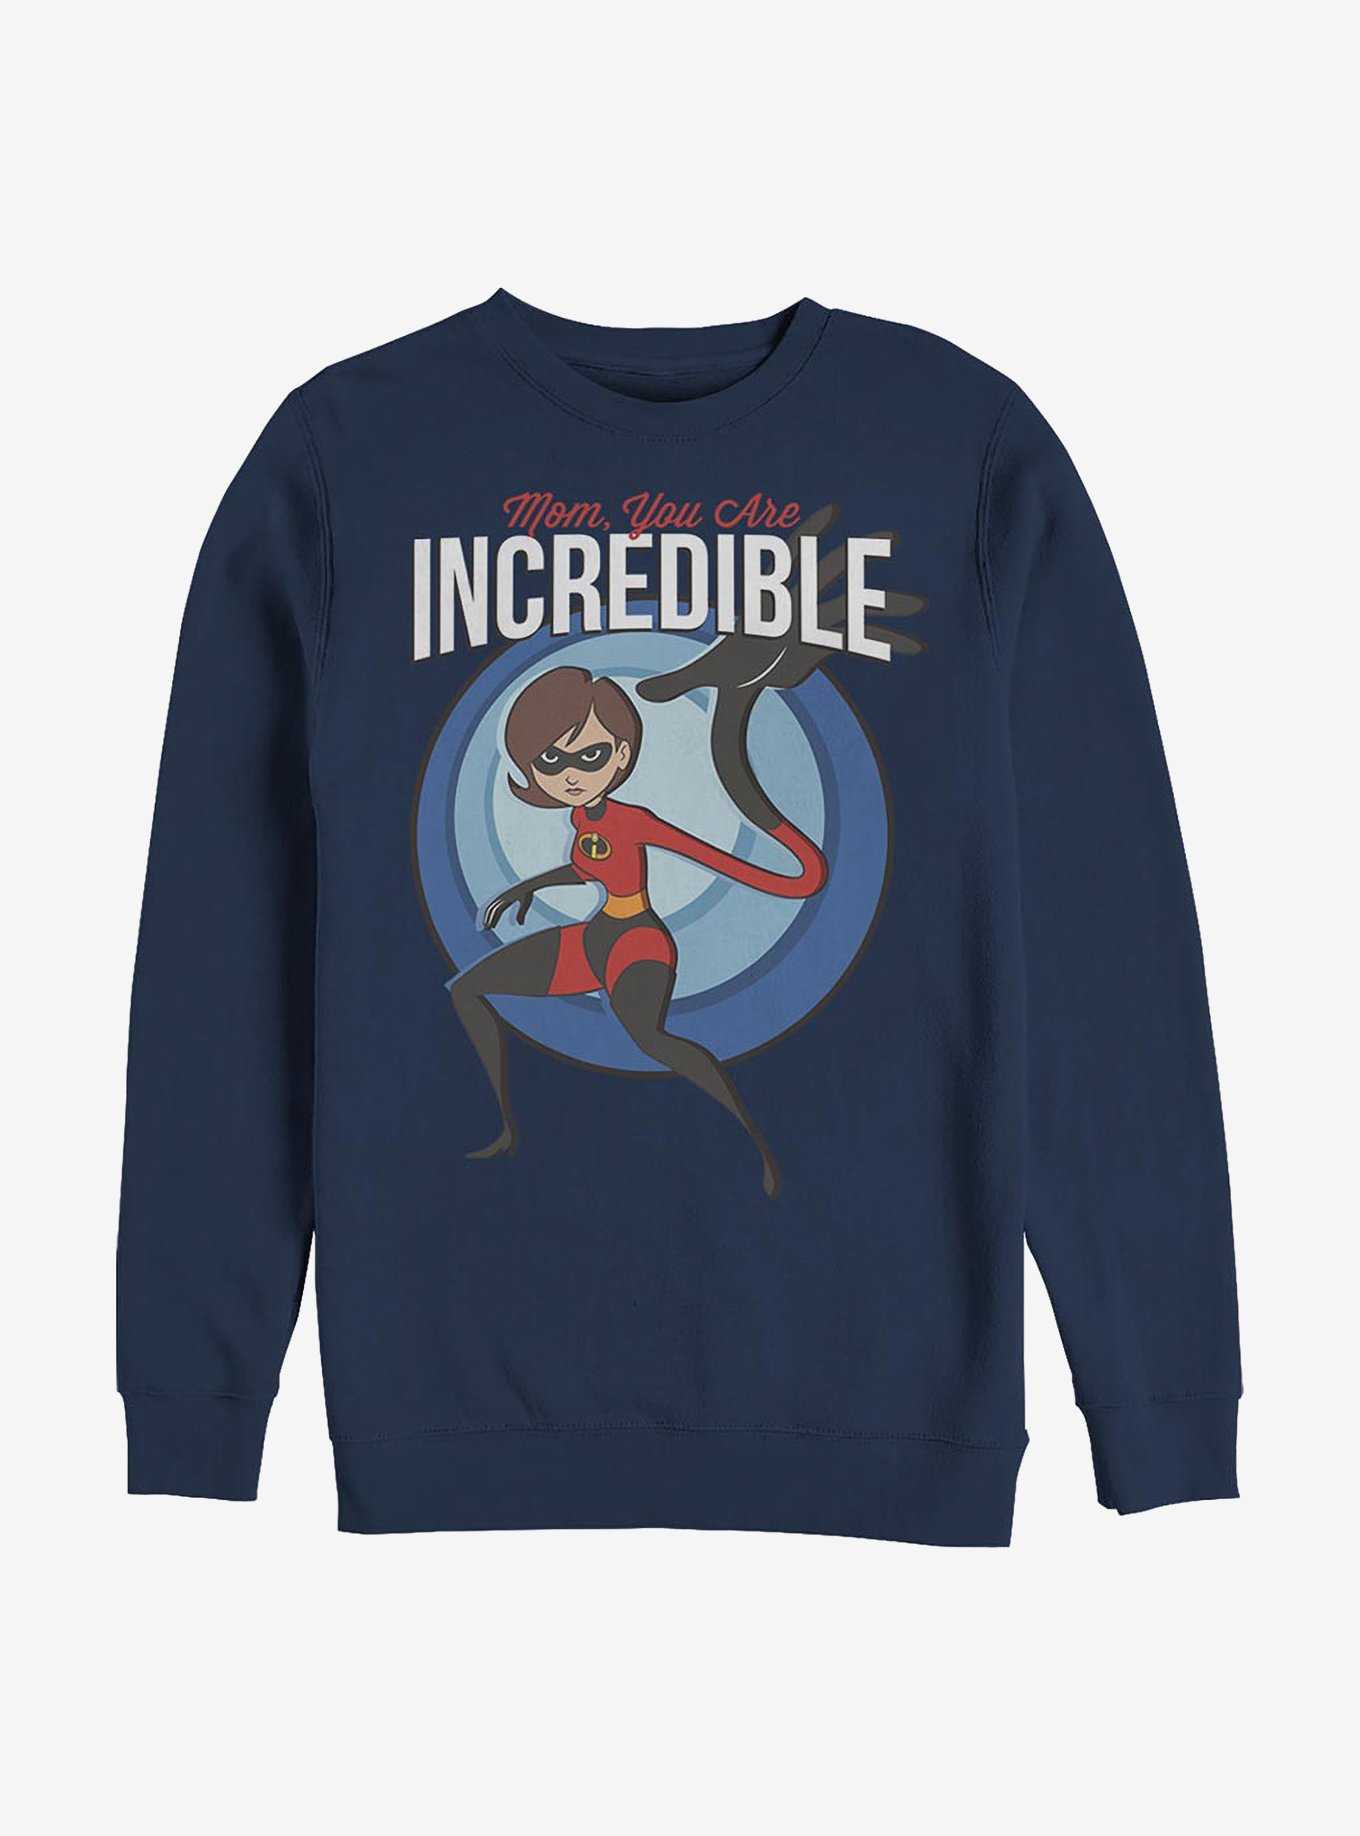 Disney Pixar The Incredibles Incredible Mom Sweatshirt, , hi-res